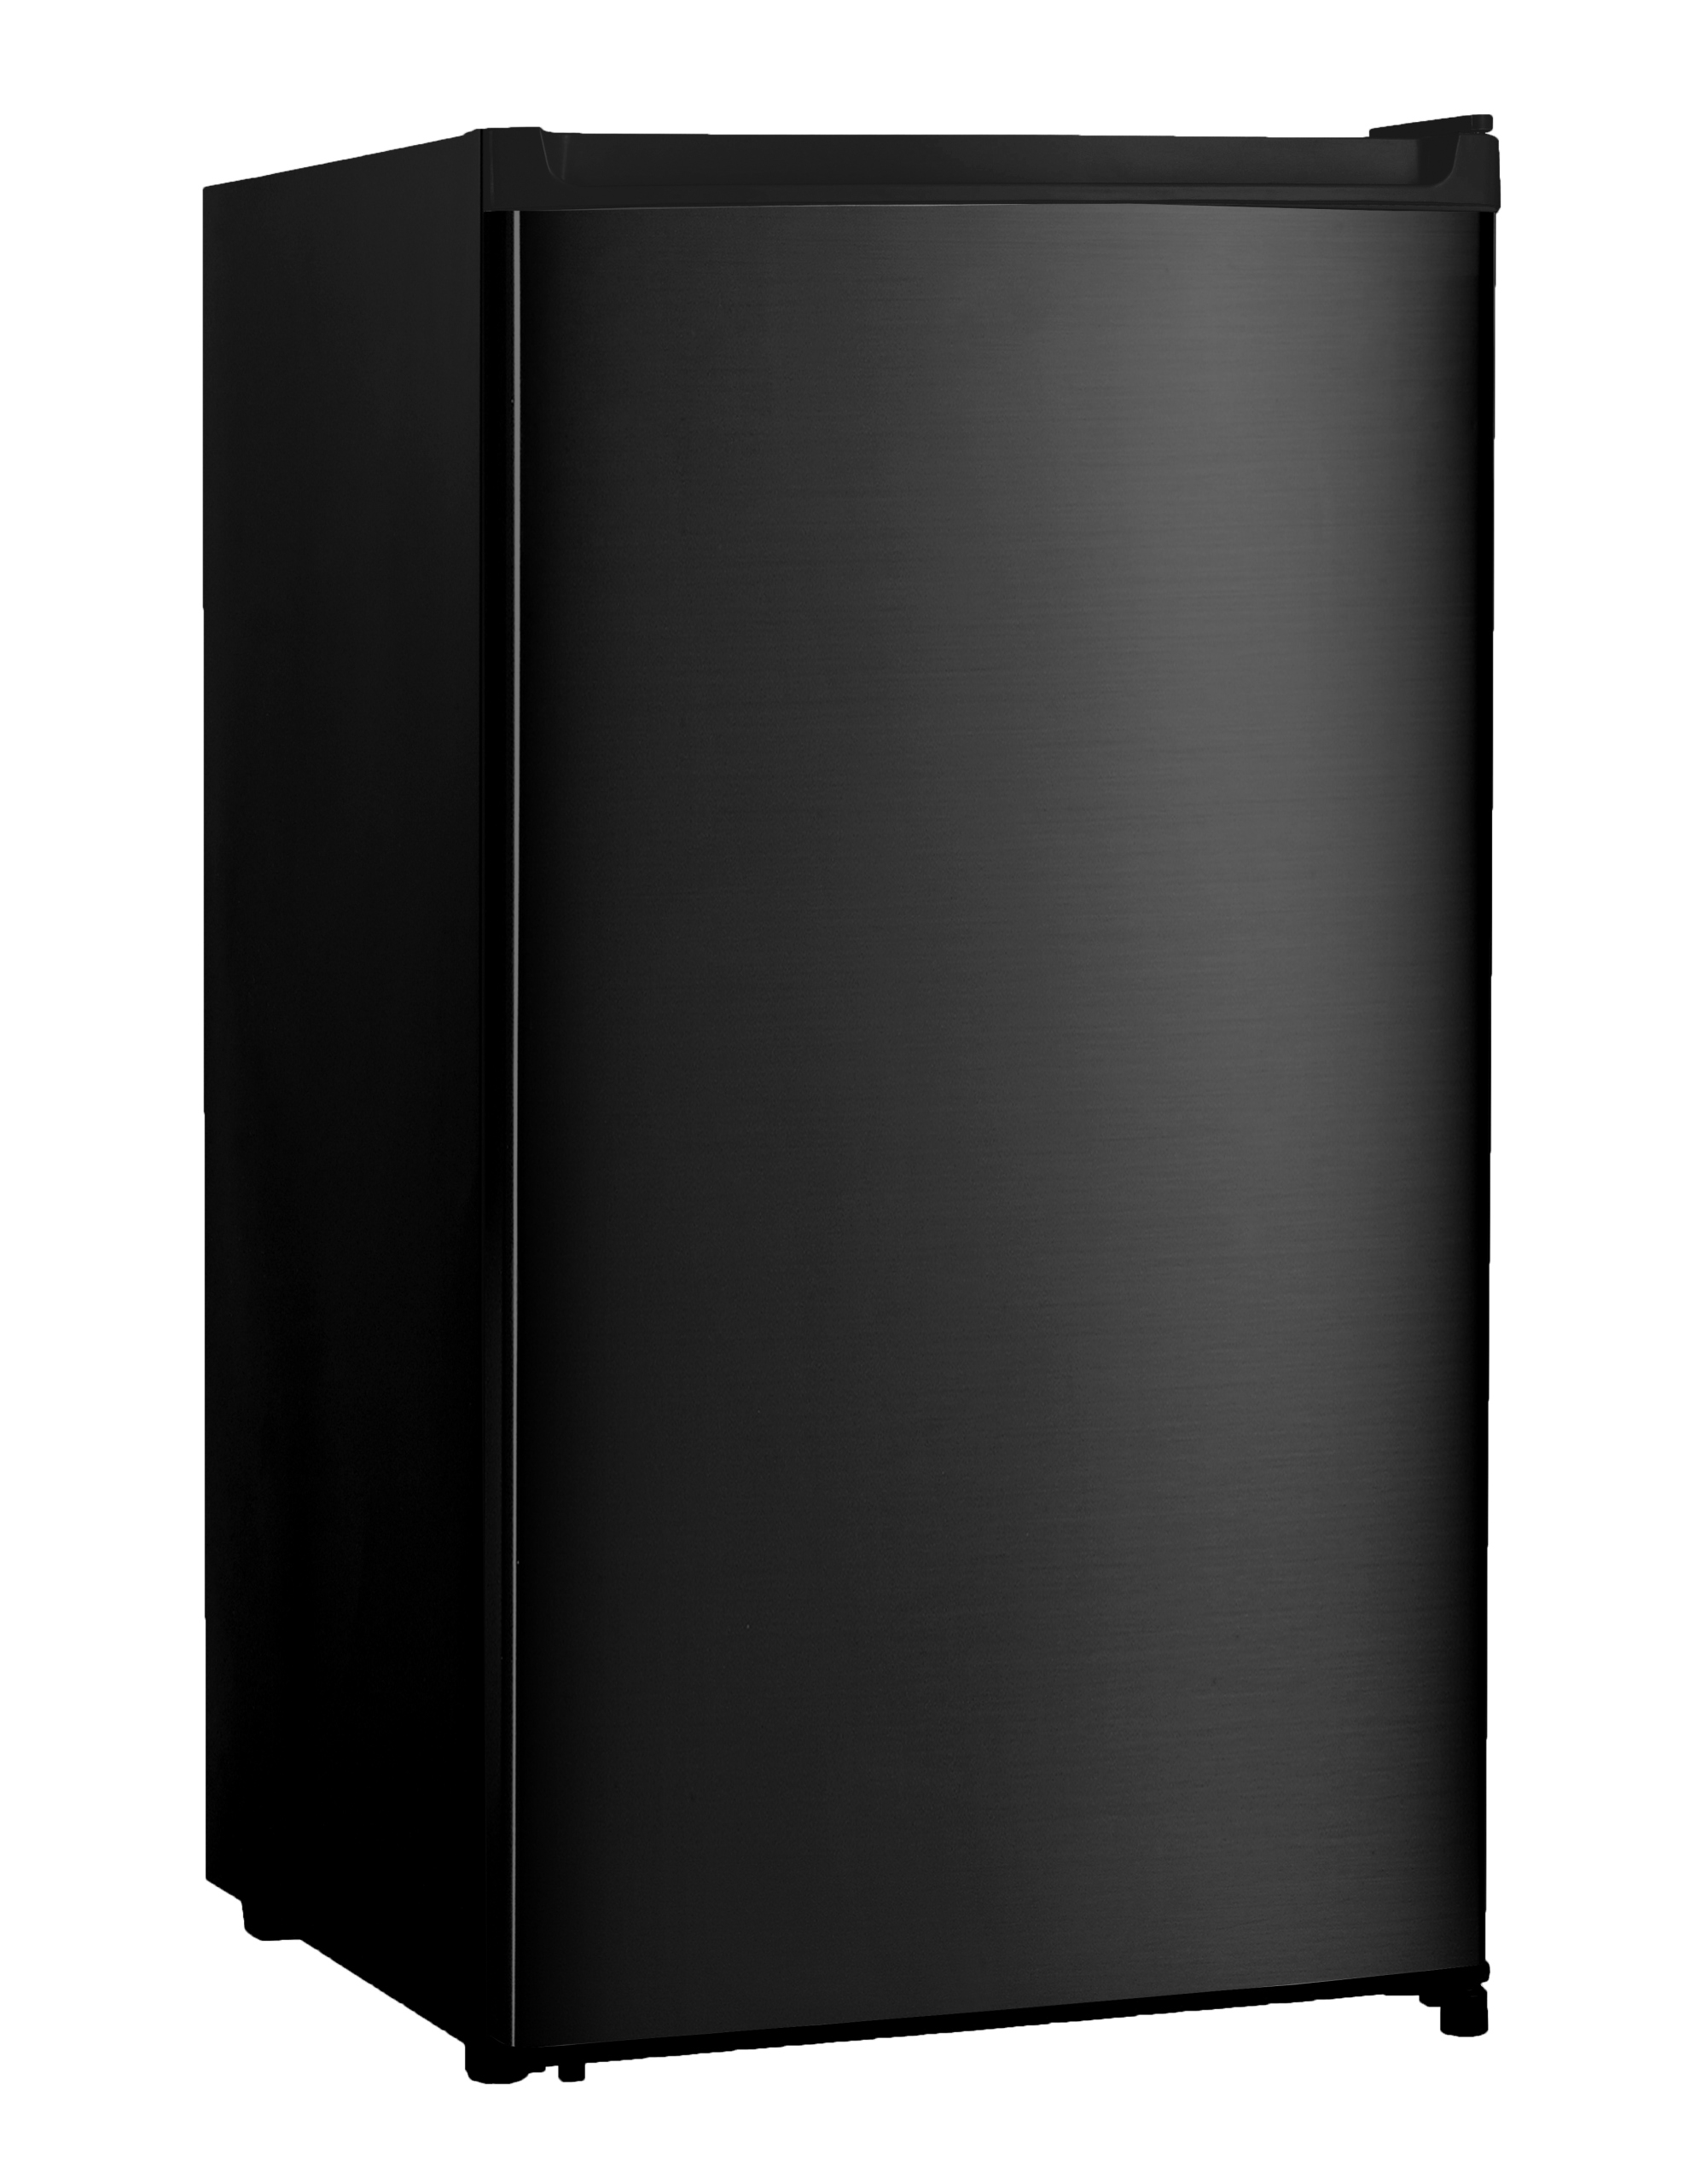 Jednodveřová chladnička Guzzanti GZ 90B1